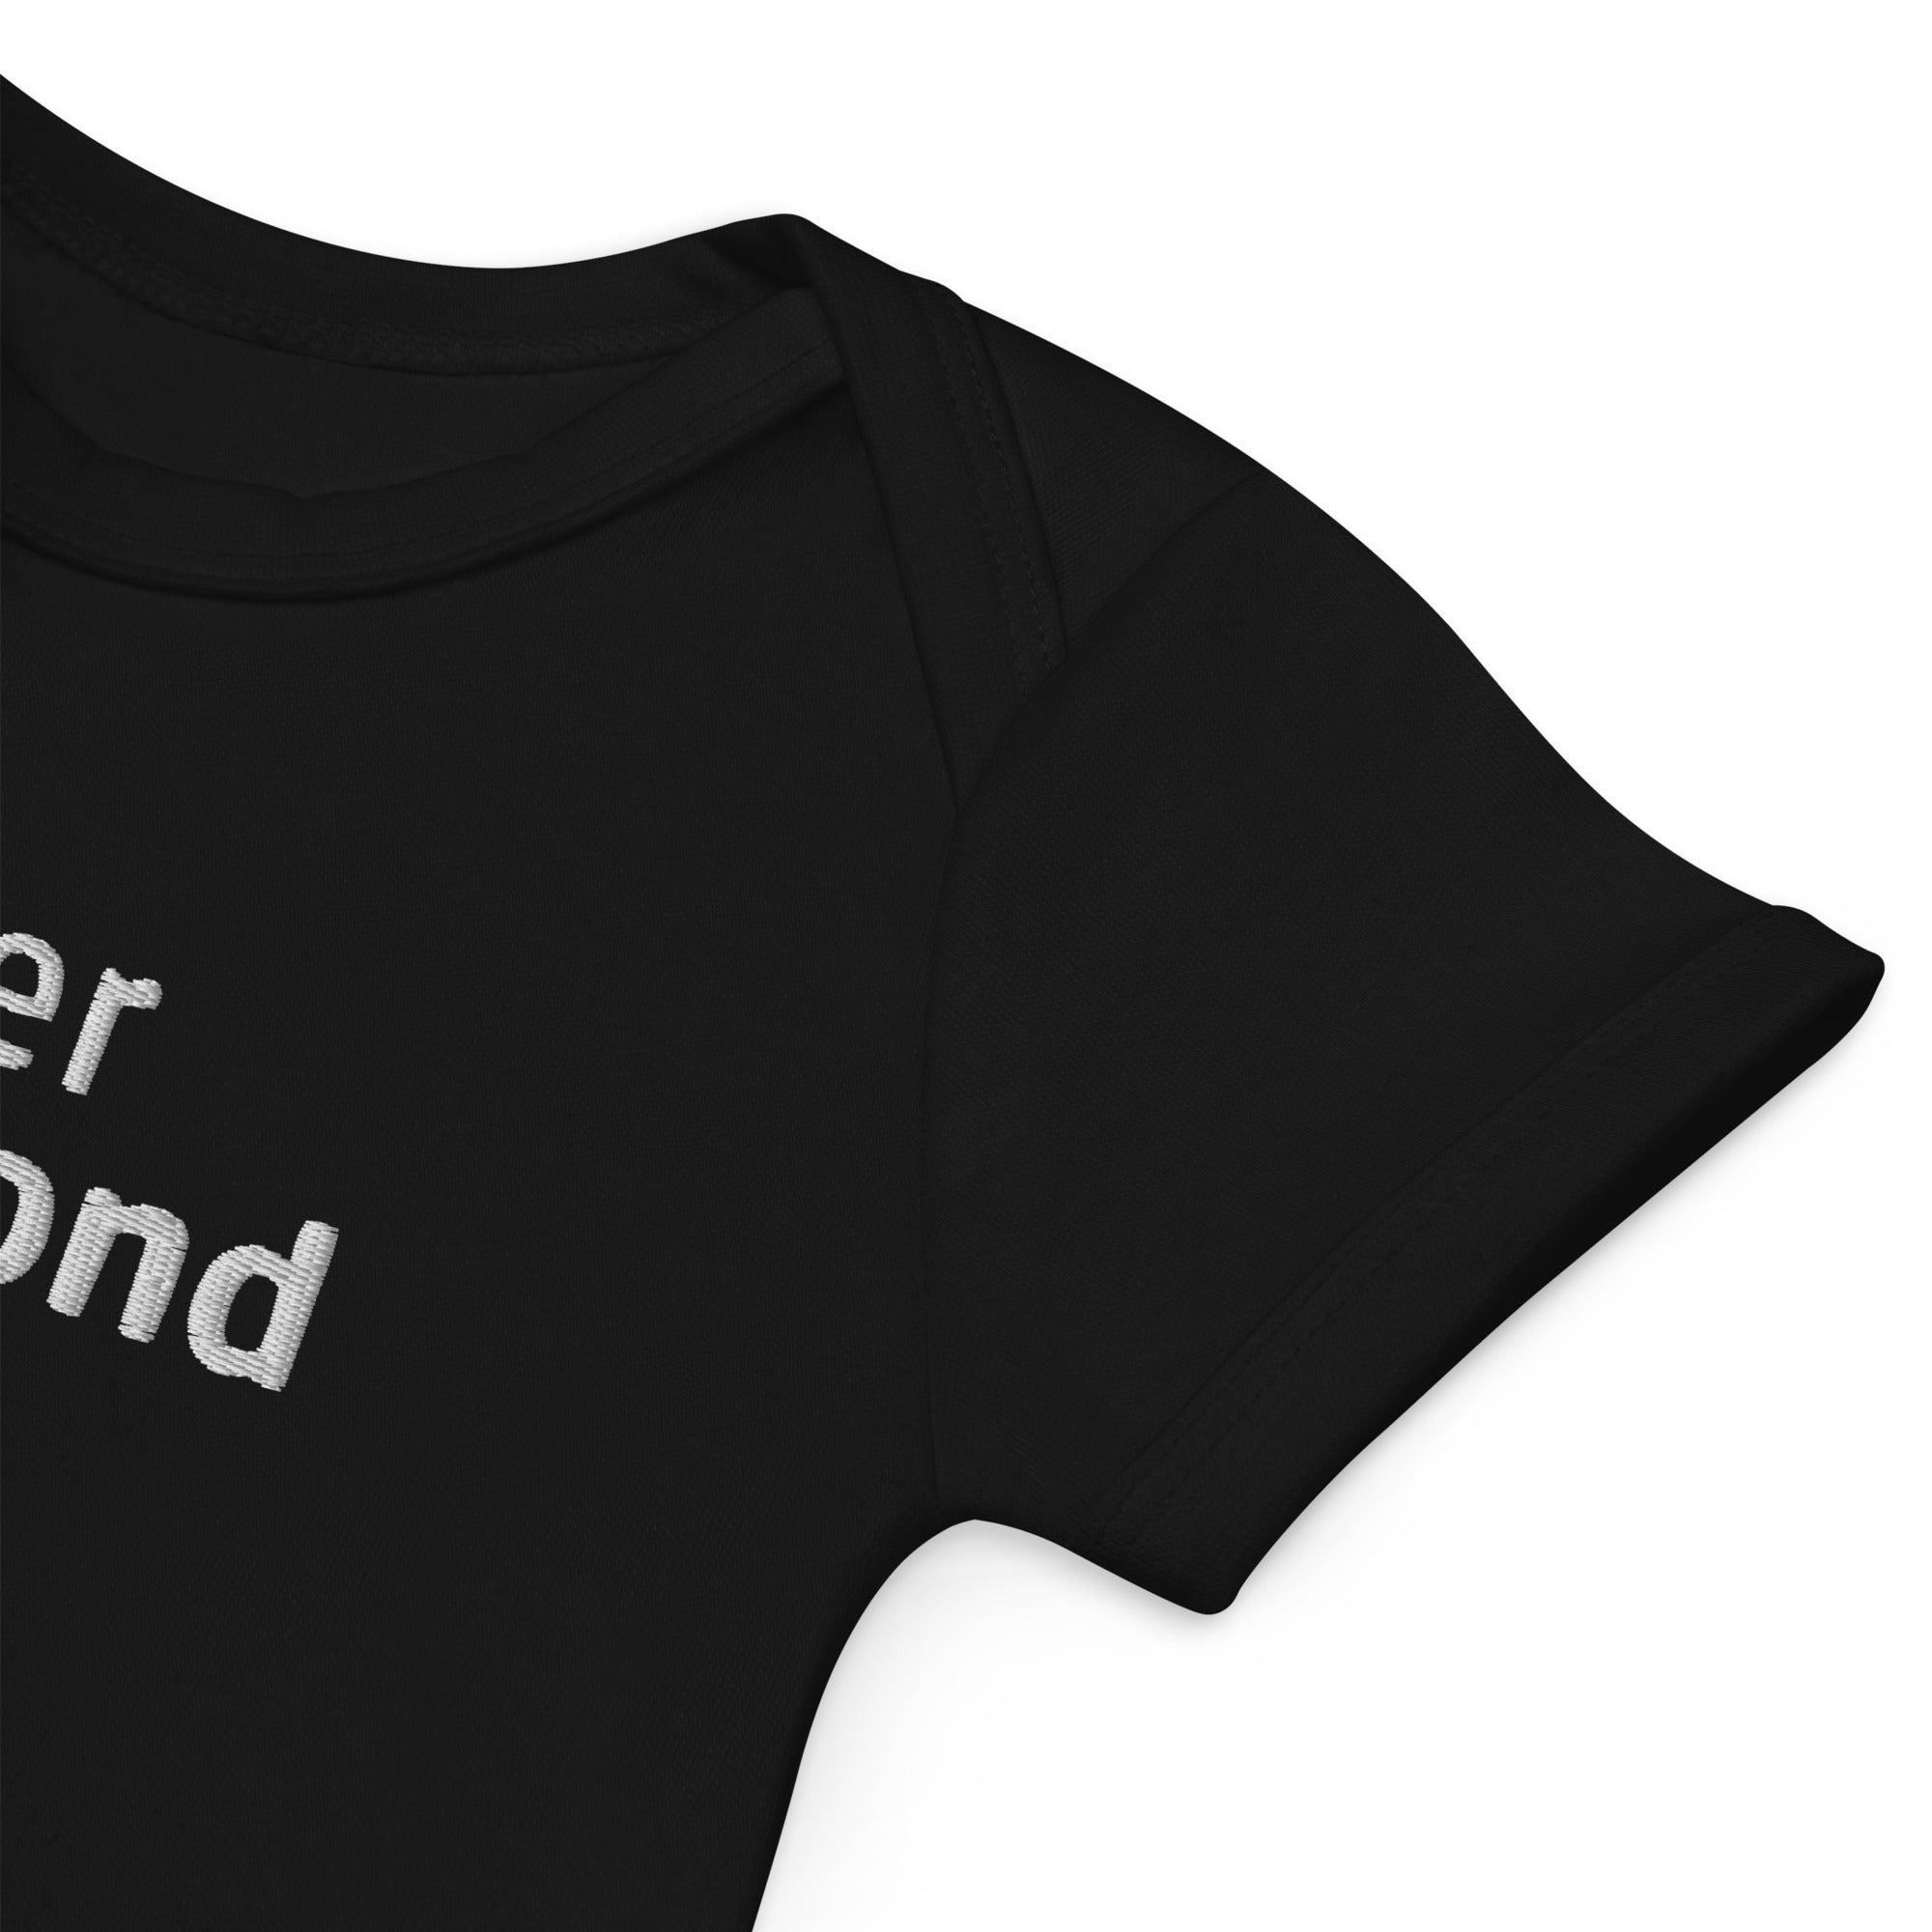 Wiener Blond, „Band Logo Merch", Babystrampler aus Bio-Baumwolle